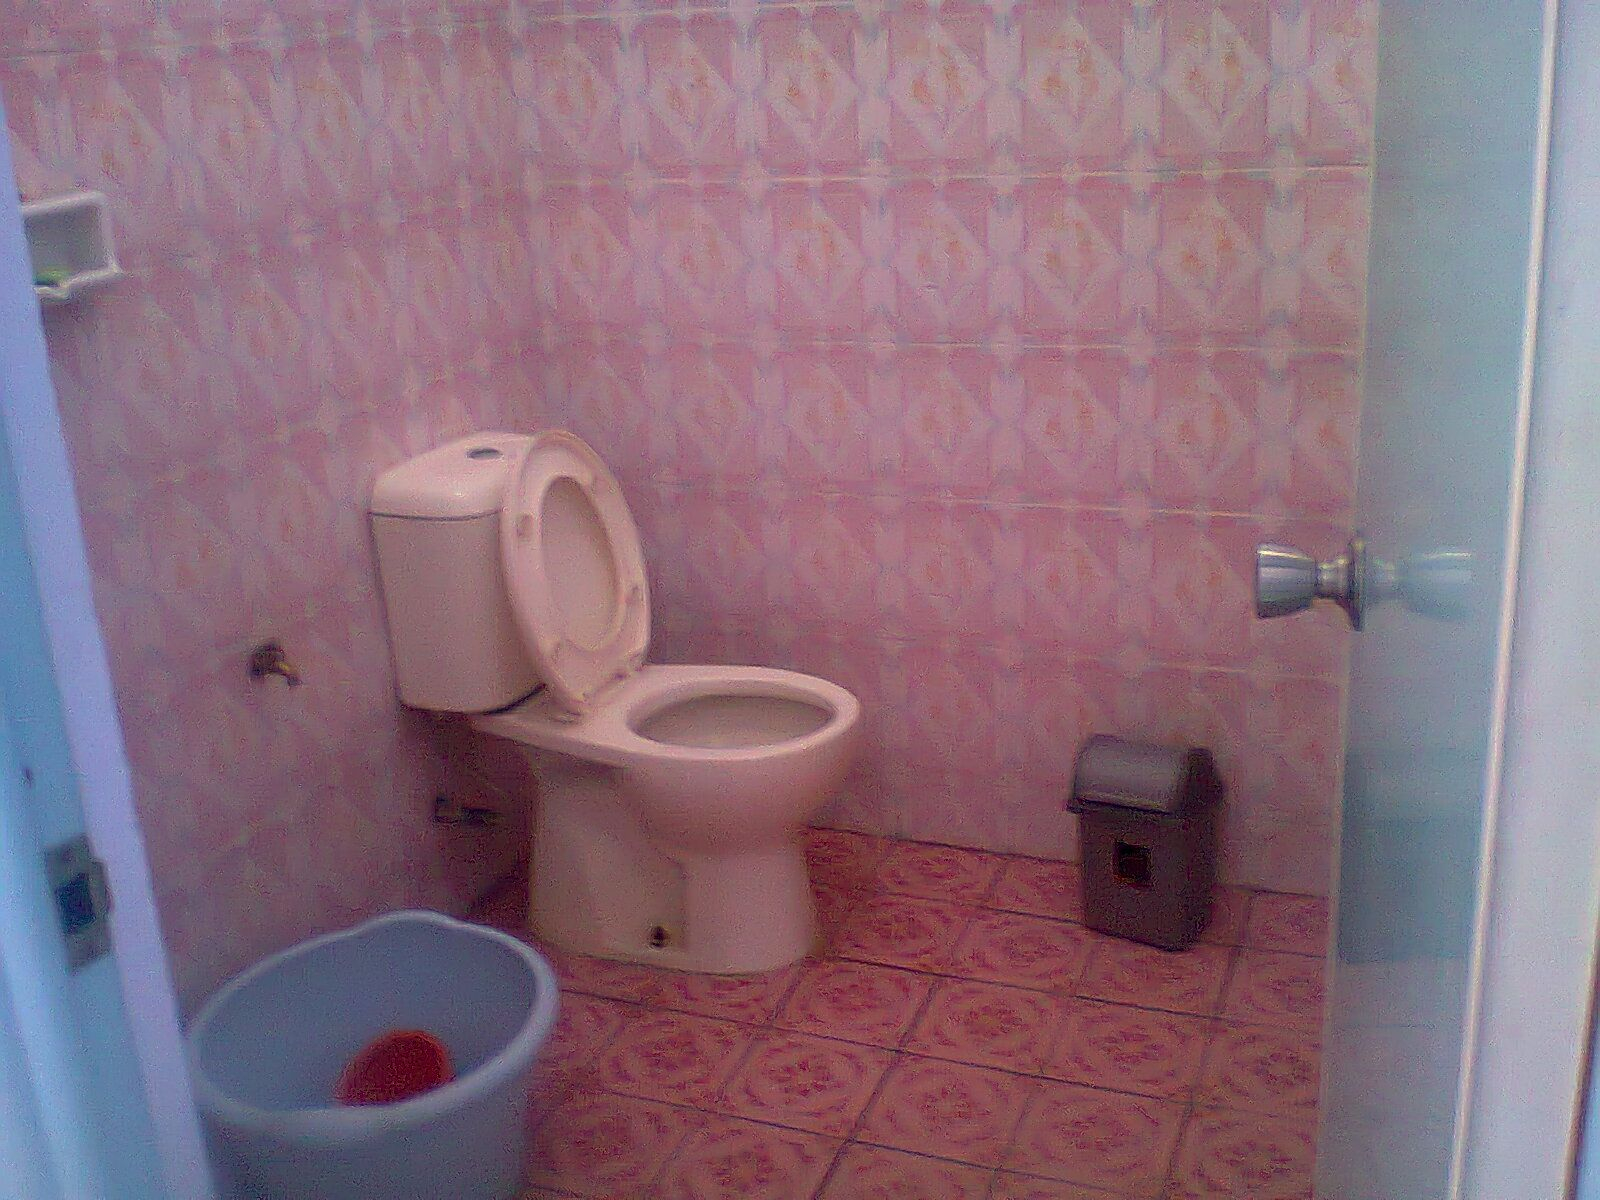 Bathroom 8